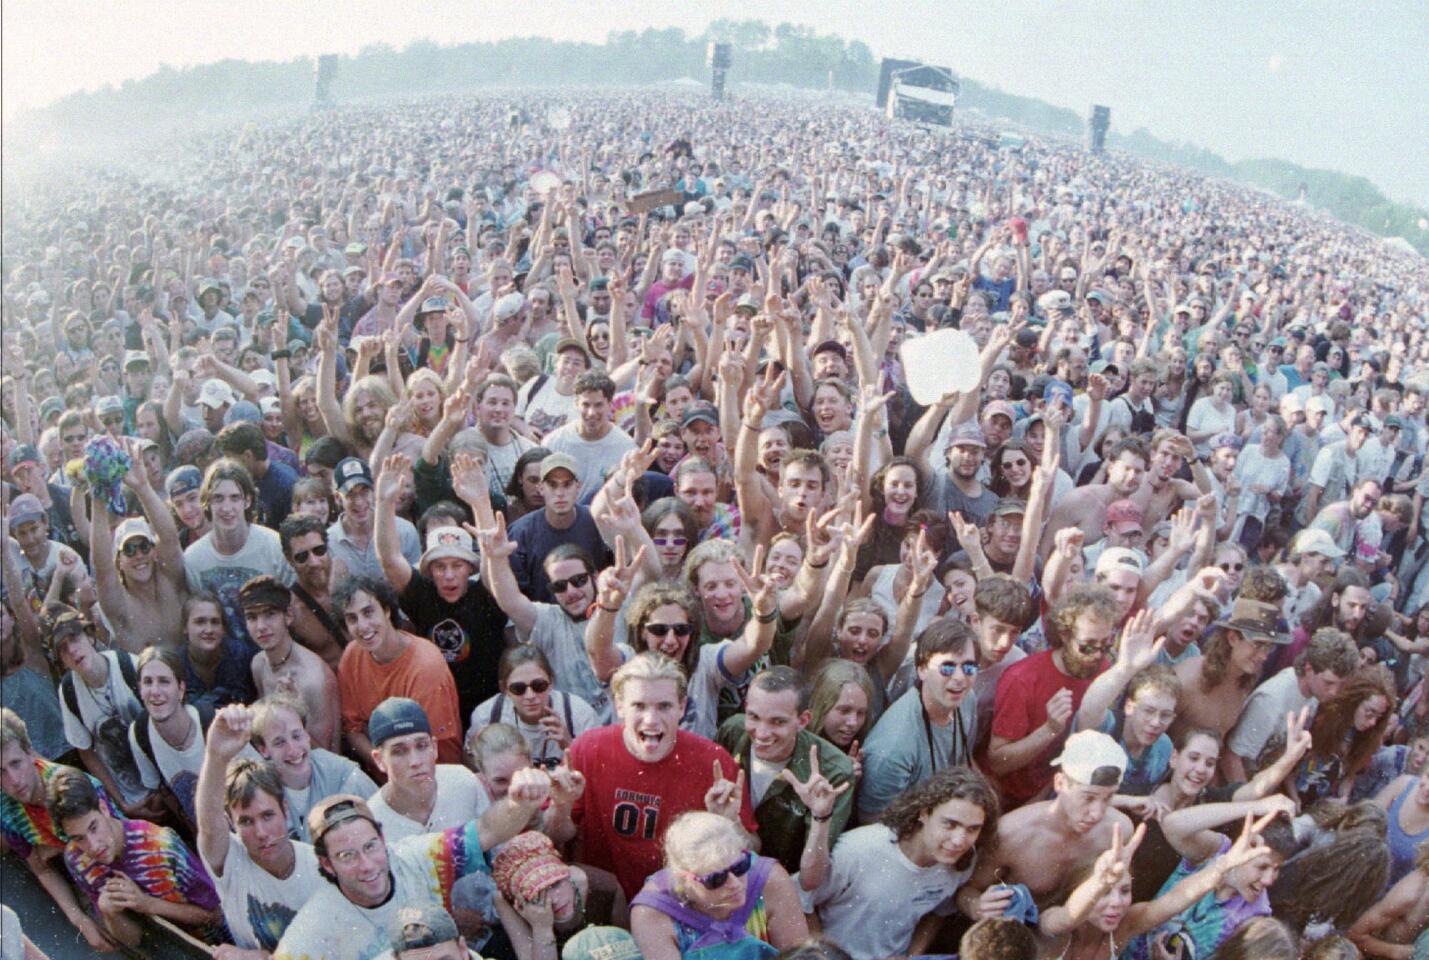 Thousands of fans attend a Grateful Dead concert in Highgate, Vt., June 15, 1995.